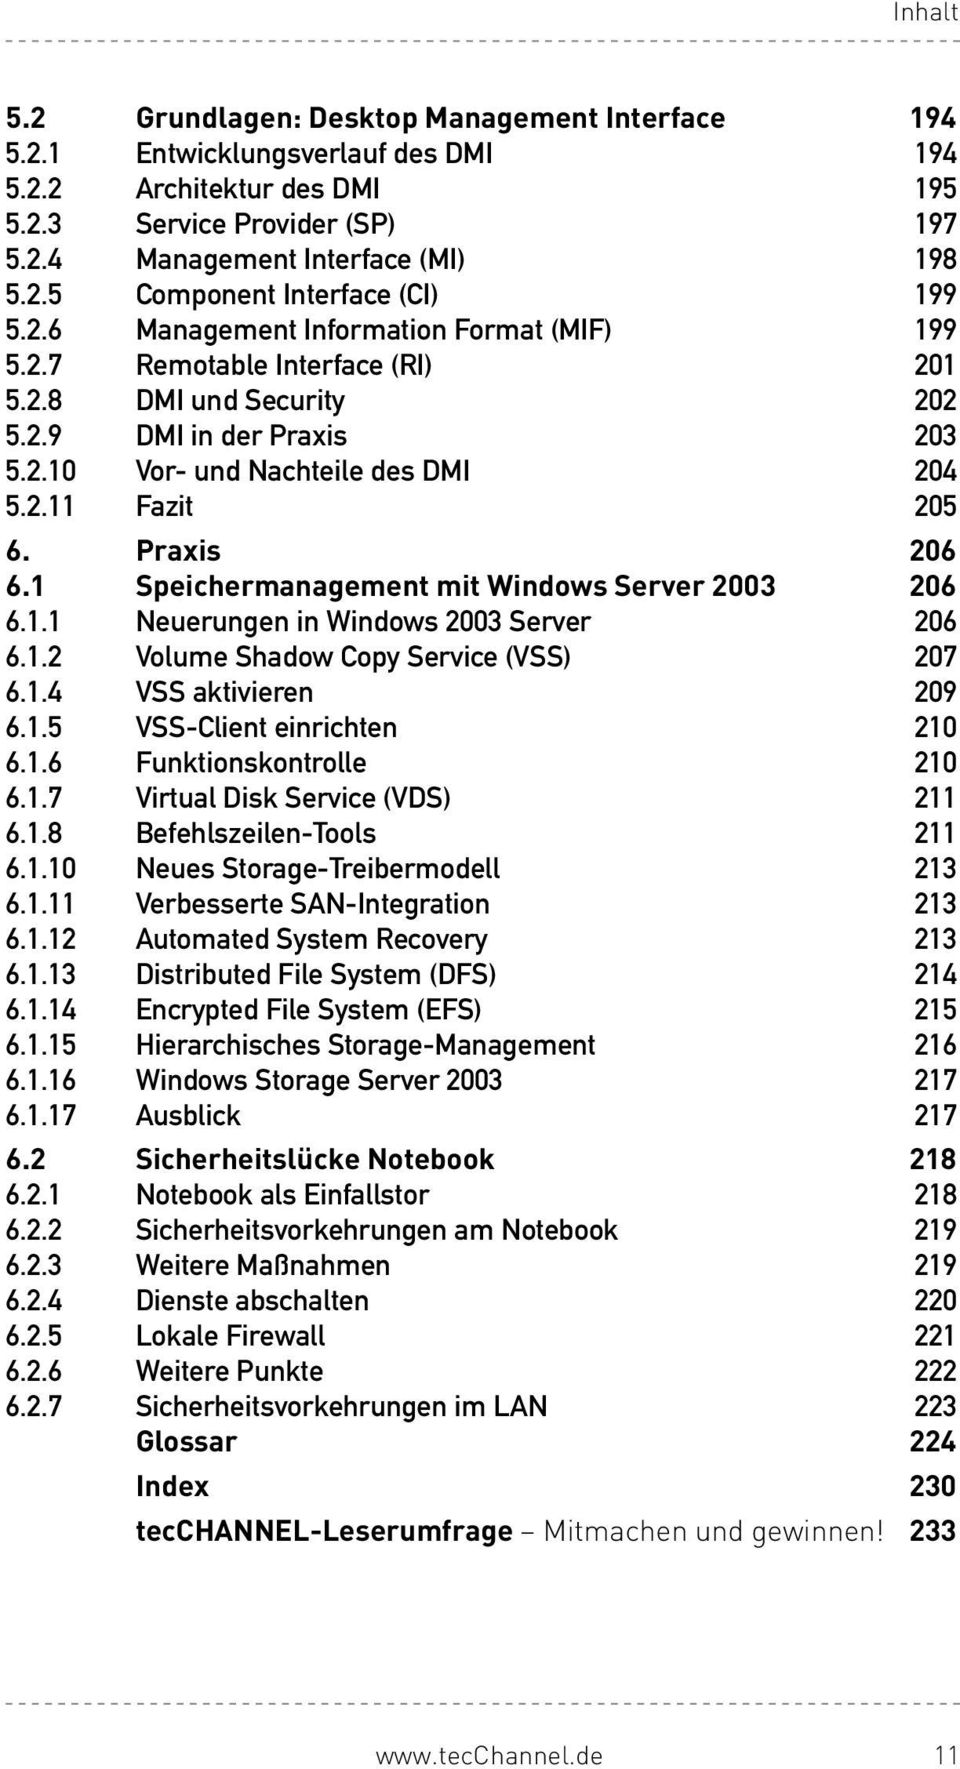 1 Speichermanagement mit Windows Server 2003 206 6.1.1 NeuerungeninWindows2003Server 206 6.1.2 VolumeShadowCopyService(VSS) 207 6.1.4 VSSaktivieren 209 6.1.5 VSS-Clienteinrichten 210 6.1.6 Funktionskontrolle 210 6.